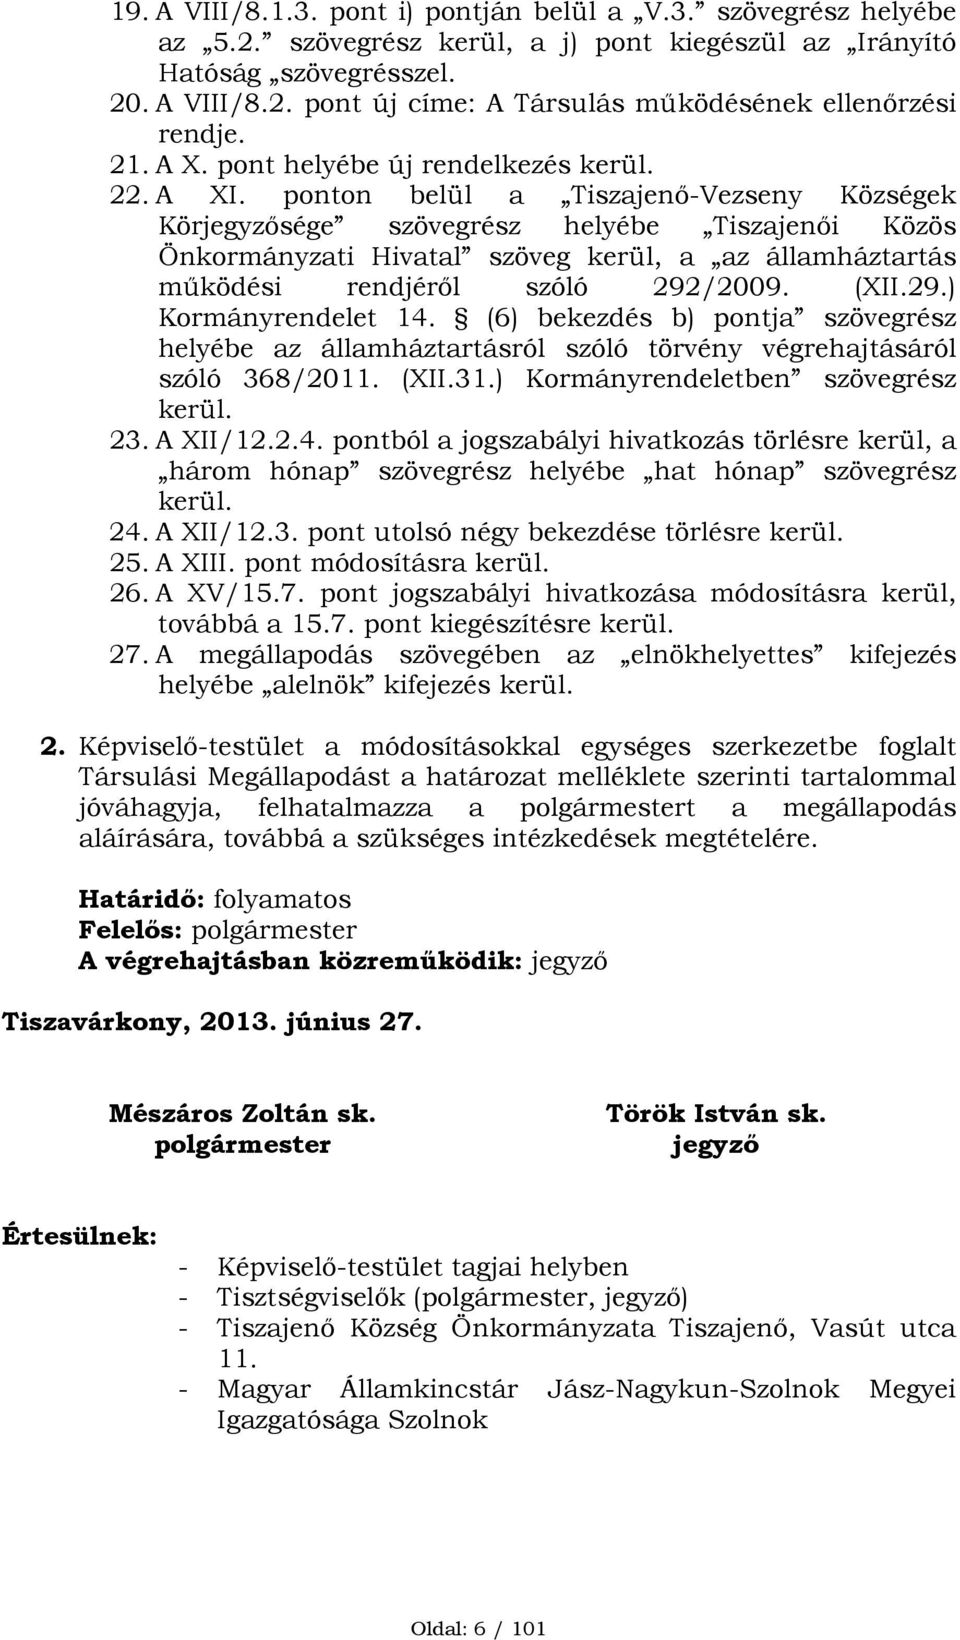 ponton belül a Tiszajenő-Vezseny Községek Körjegyzősége szövegrész helyébe Tiszajenői Közös Önkormányzati Hivatal szöveg kerül, a az államháztartás működési rendjéről szóló 292/2009. (XII.29.) Kormányrendelet 14.